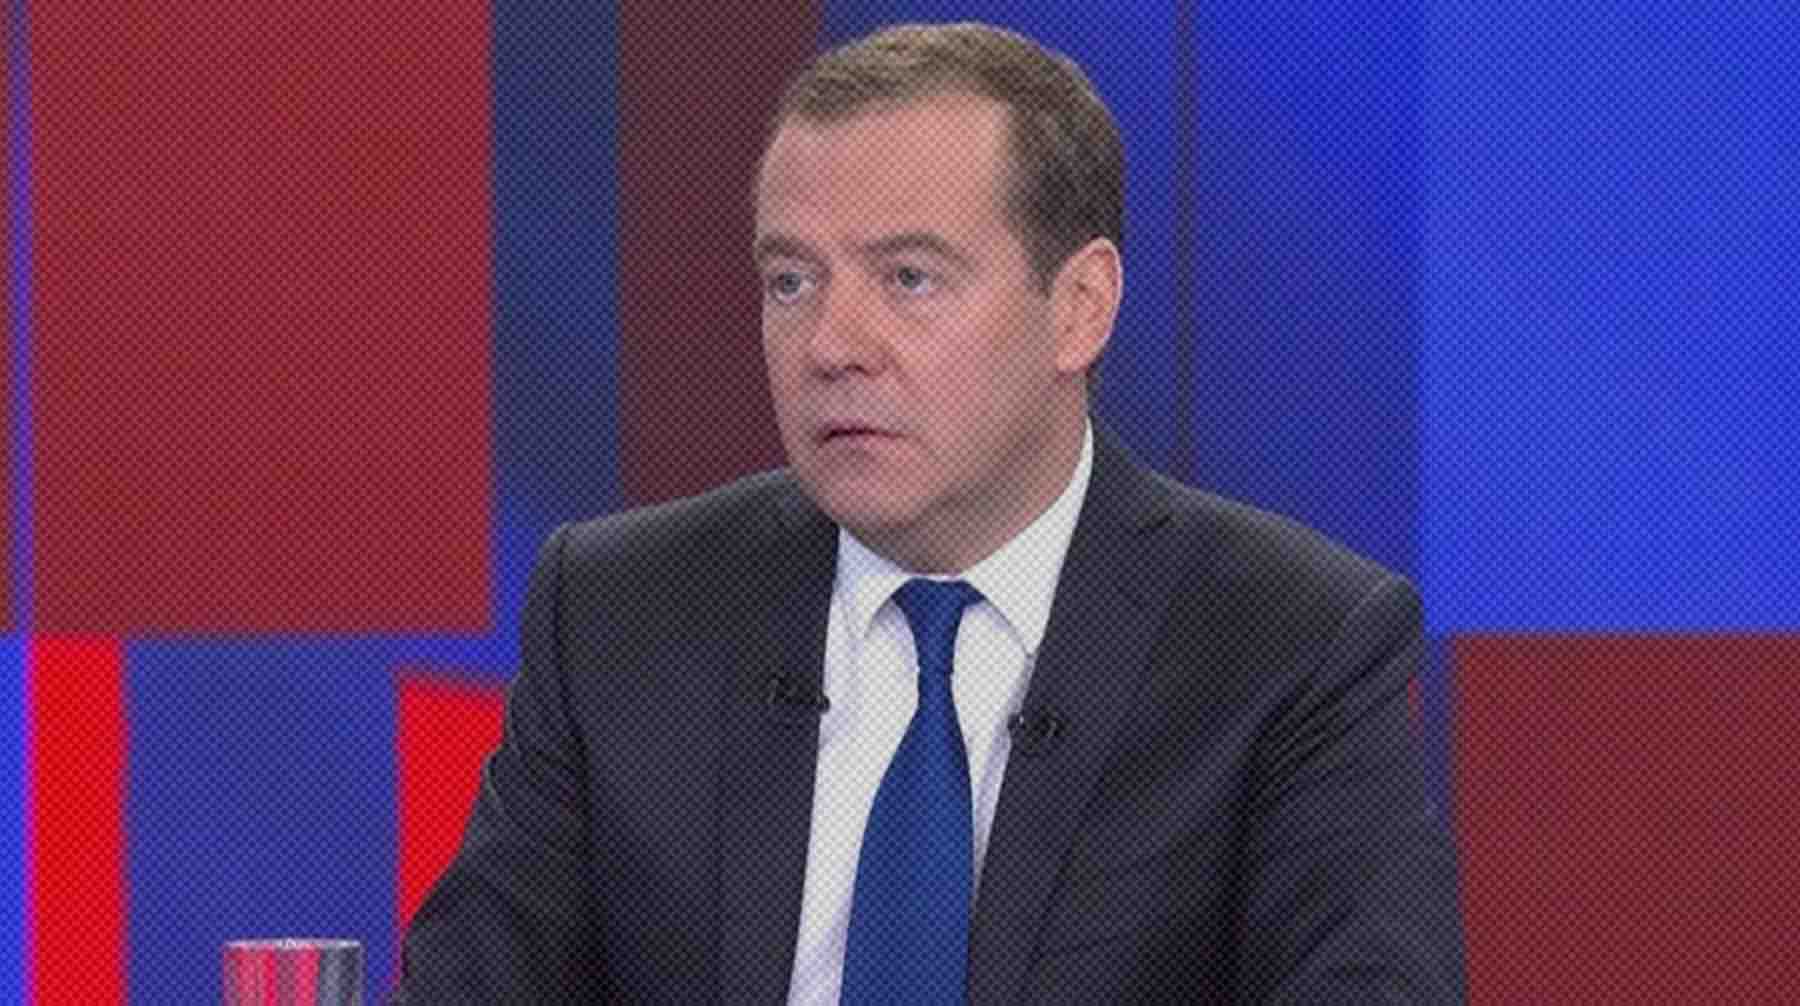 Dailystorm - Медведев: Украина является частью России, но Москва долго мирилась с тем, что страны живут «в разных квартирах»